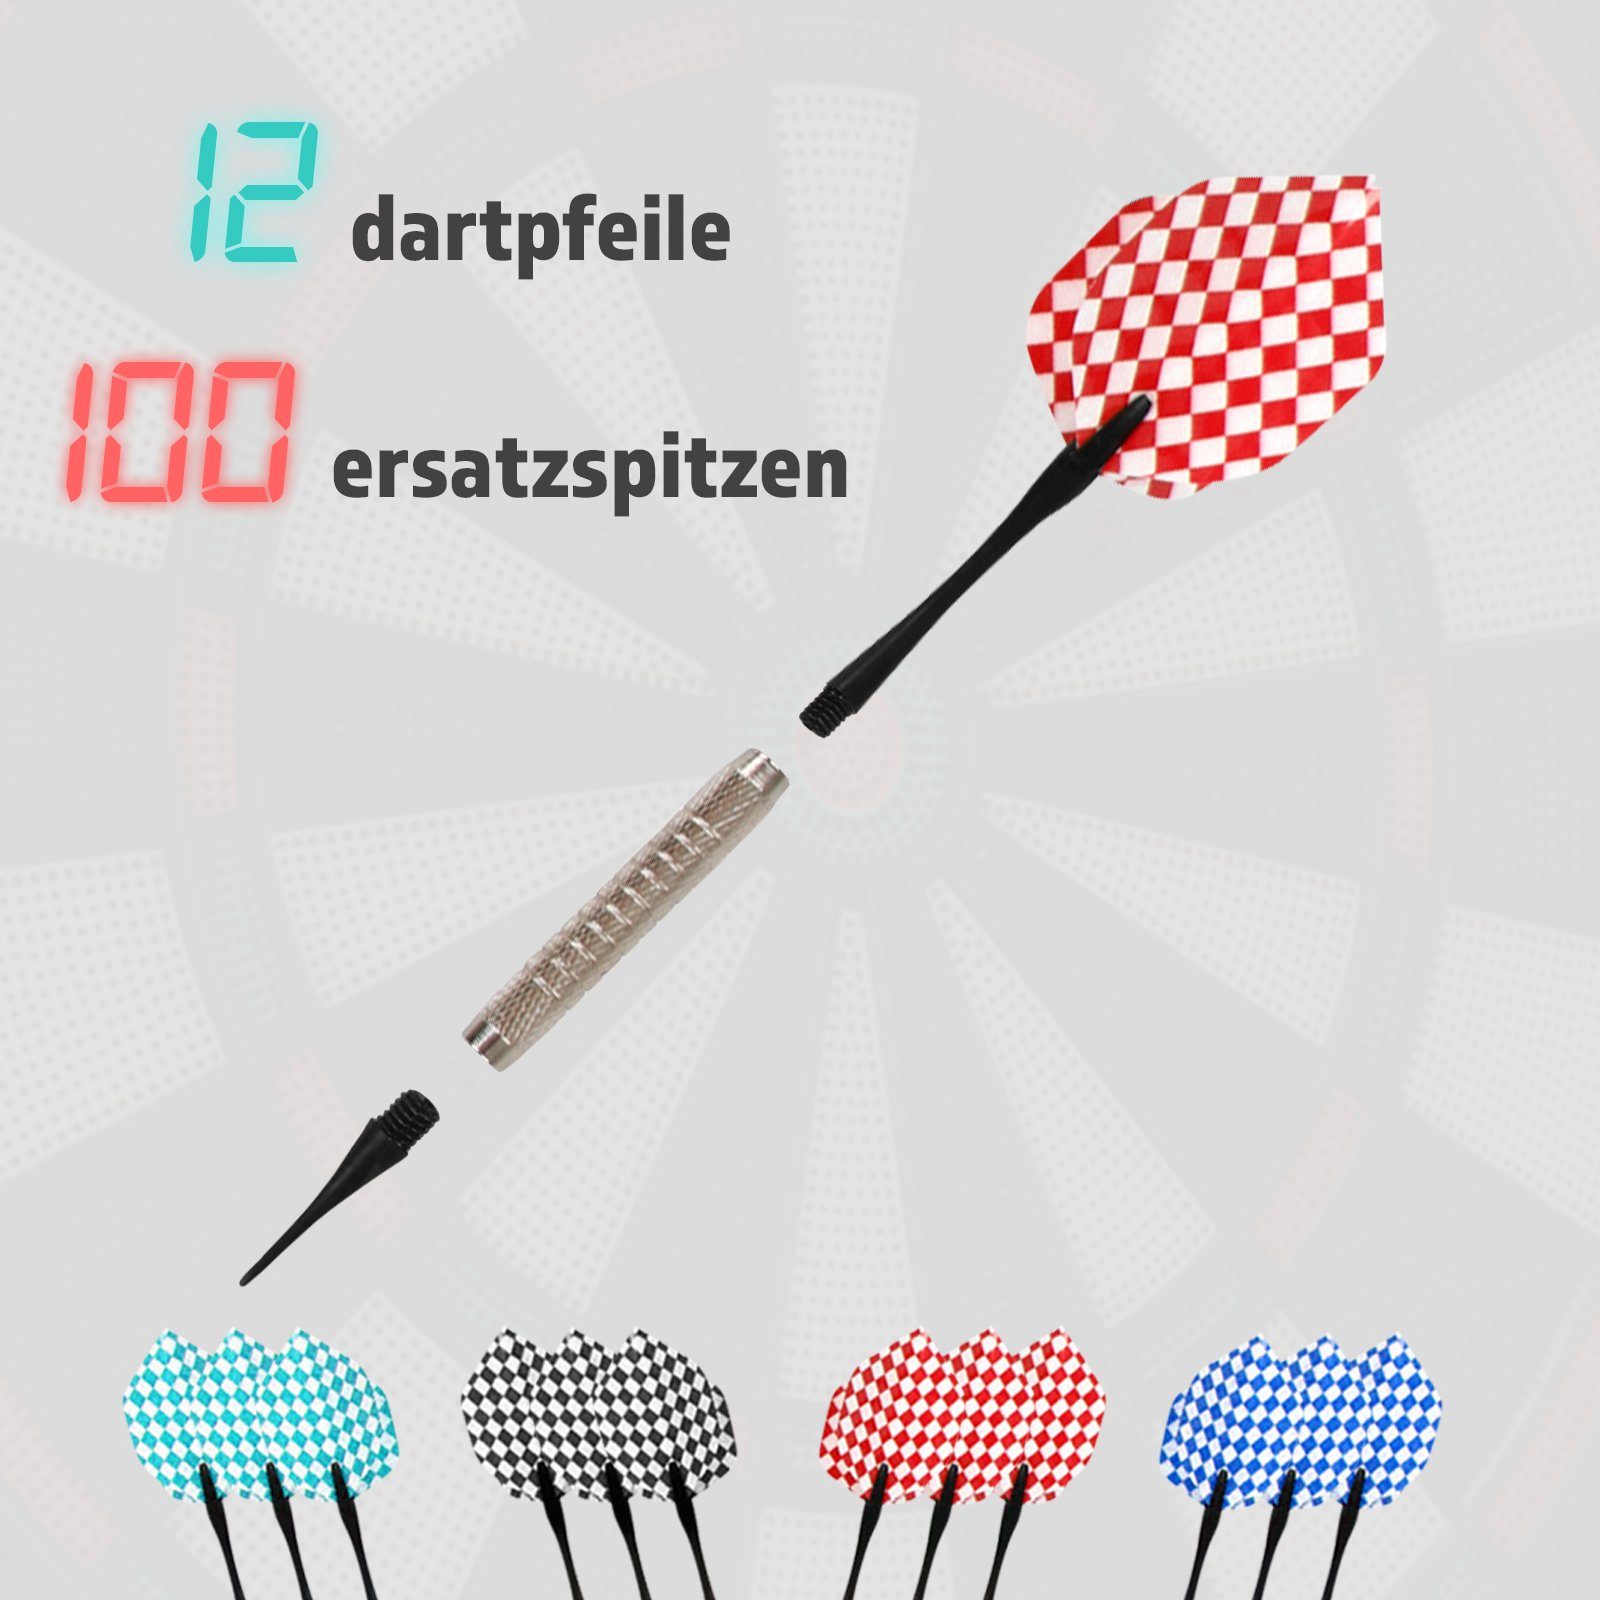 Soft Dart-Scheibe 12 Profi Modell-quadratischeForm/ohneTüren E-Dartboard Physionics Dartspiel Elektronisch Pfeile Dartscheibe